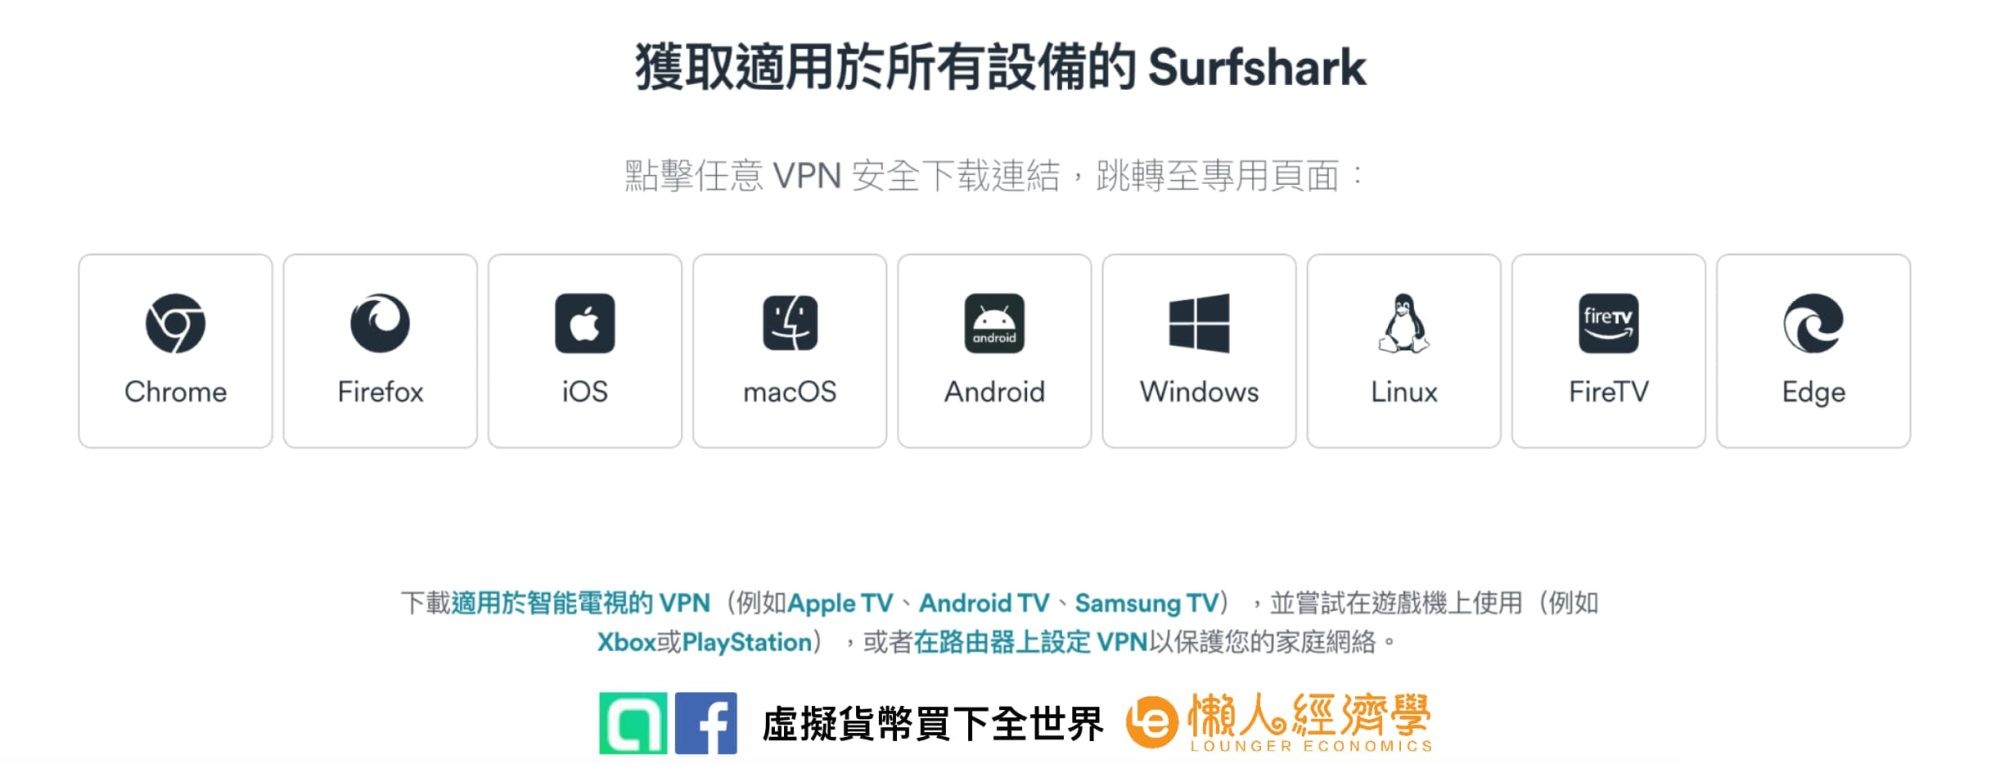 Surfshark VPN 支援幾乎所有需要使用網路的裝置，相容性極高，有注意到也能在遊戲機上使用嗎？這也意味著你甚至可以跨區領取不同國家的每月免費遊戲。